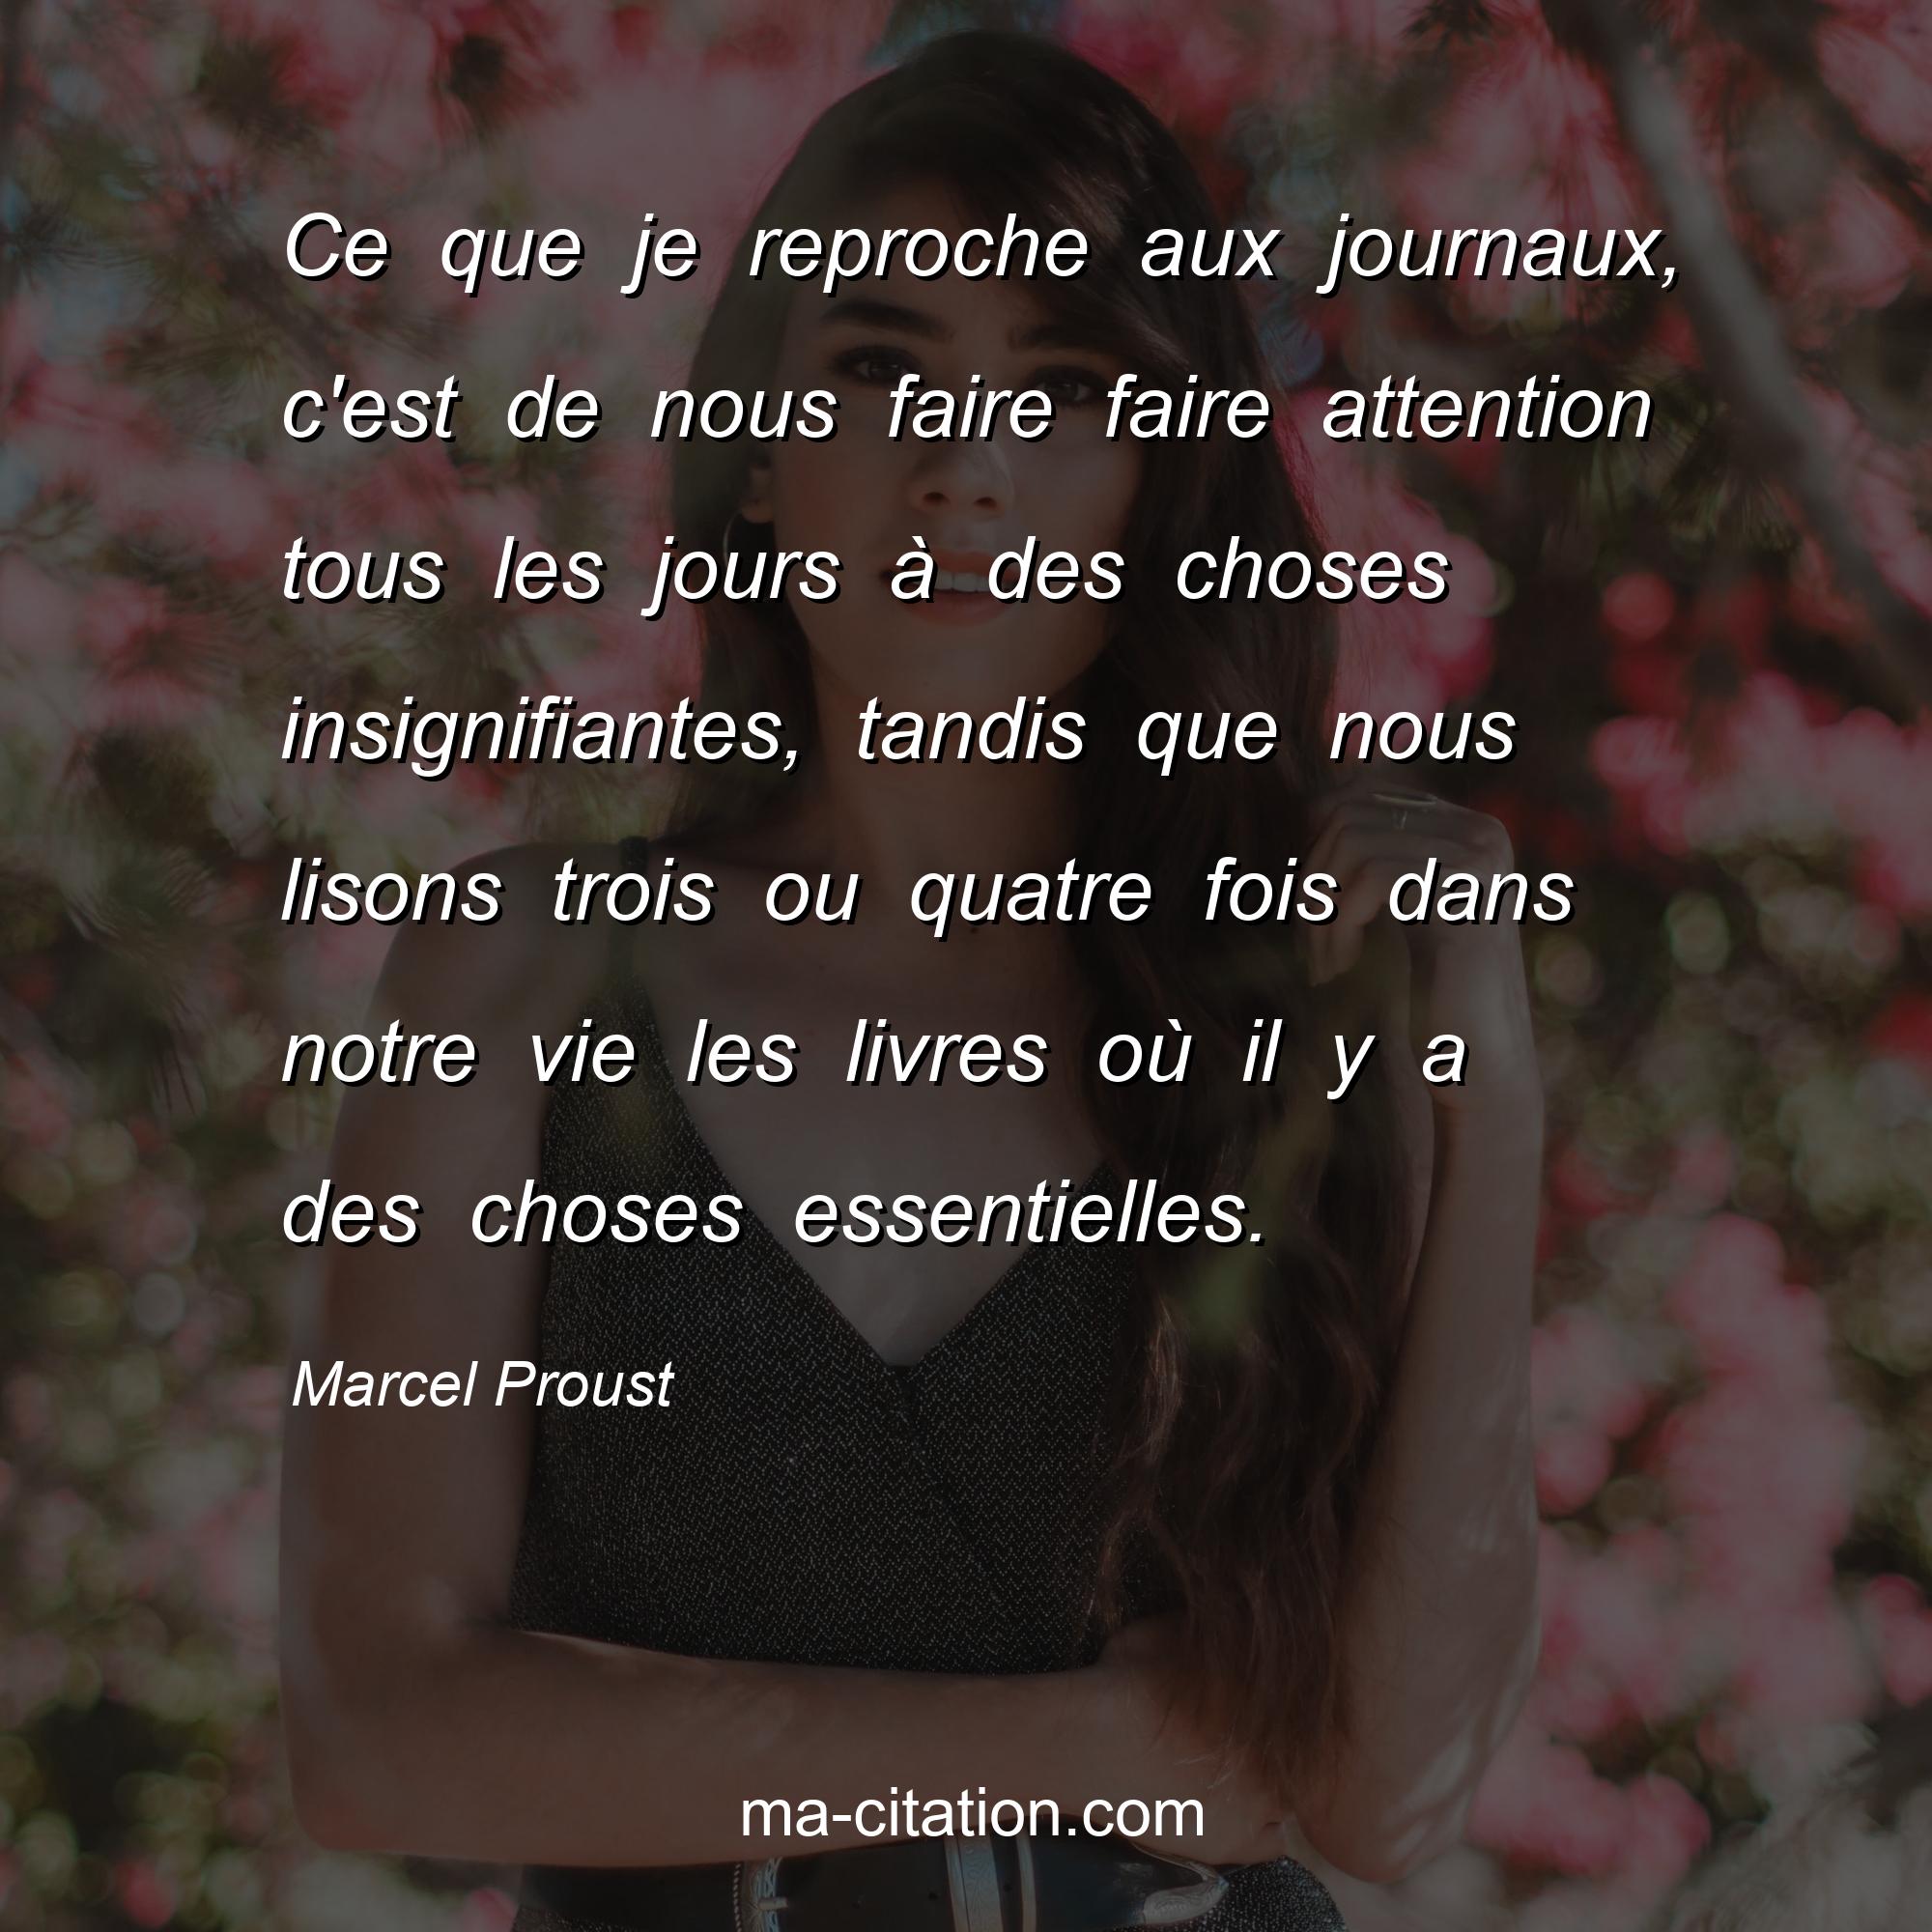 Marcel Proust : Ce que je reproche aux journaux, c'est de nous faire faire attention tous les jours à des choses insignifiantes, tandis que nous lisons trois ou quatre fois dans notre vie les livres où il y a des choses essentielles.